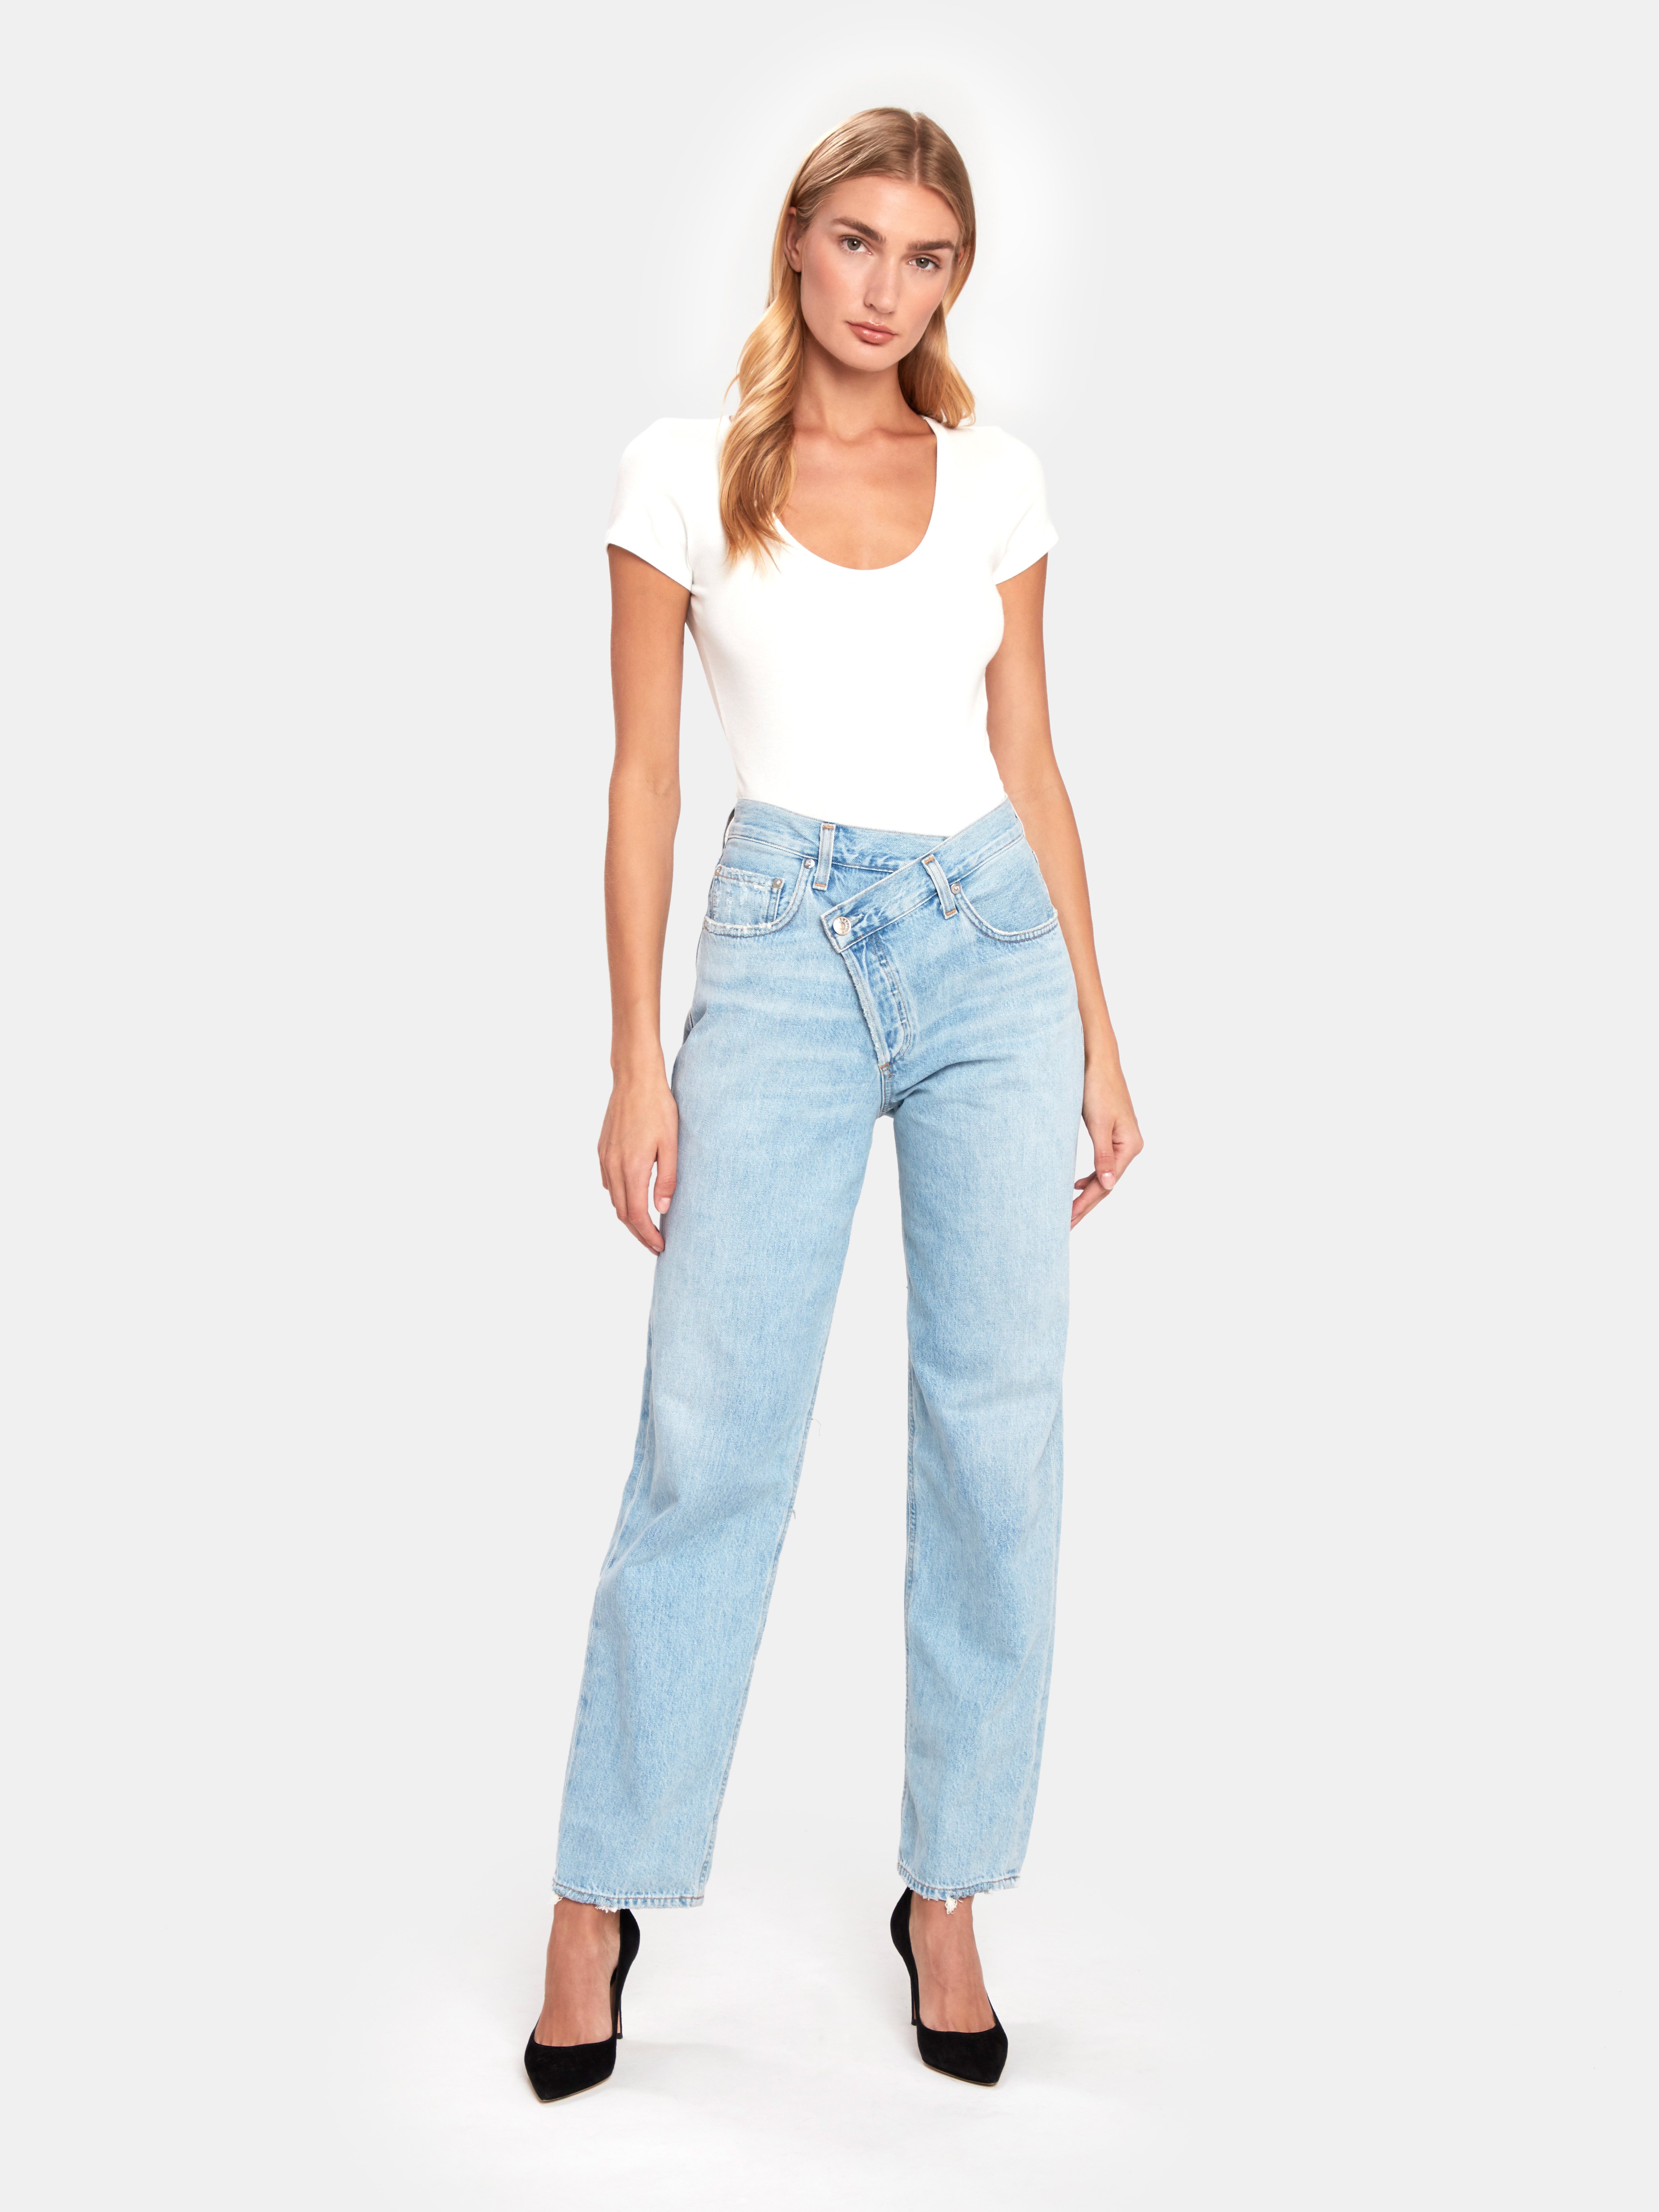 Agolde jeans size 26. EUC